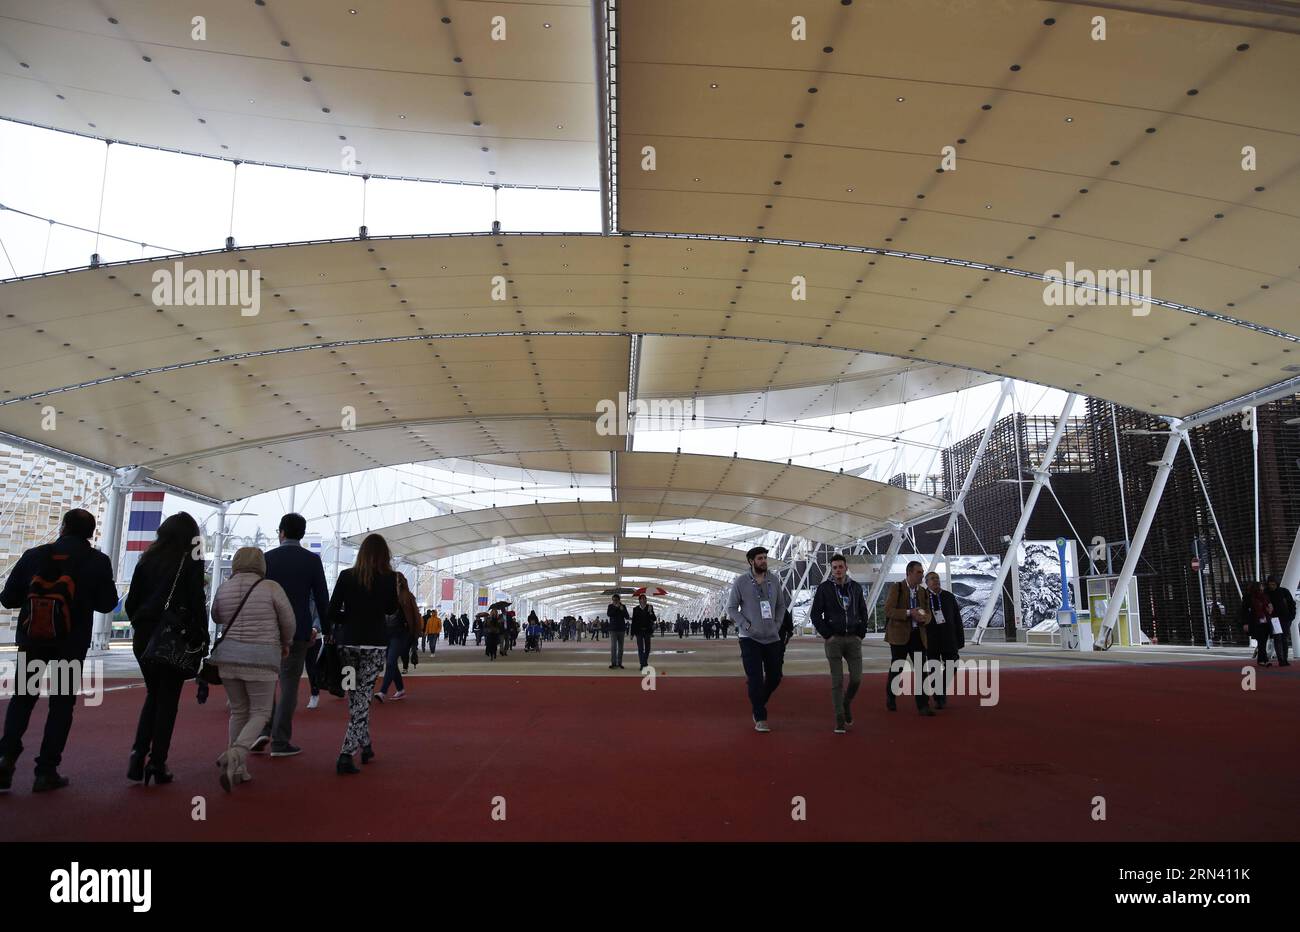 (150501) -- MILANO, 1° maggio 2015 -- i visitatori camminano sotto i capannoni giganti all'Expo Milano 2015 a Milano, Italia, 1° maggio 2015. L'Expo di Milano durerà fino a ottobre 31 e si prevede che attirerà oltre 20 milioni di visitatori). ITALIA-MILANO-EXPO YexPingfan PUBLICATIONxNOTxINxCHN Milano 1 maggio 2015 i visitatori camminano sotto capannoni giganti ALL'EXPO Milano 2015 di Milano Italia 1 maggio 2015 l'EXPO Milano si svolgerà fino a ottobre 31 e dovrebbe attrarre oltre 20 milioni di visitatori Italia EXPO Milano YexPingfan PUBLICATIONxNOTxINxCHN Foto Stock